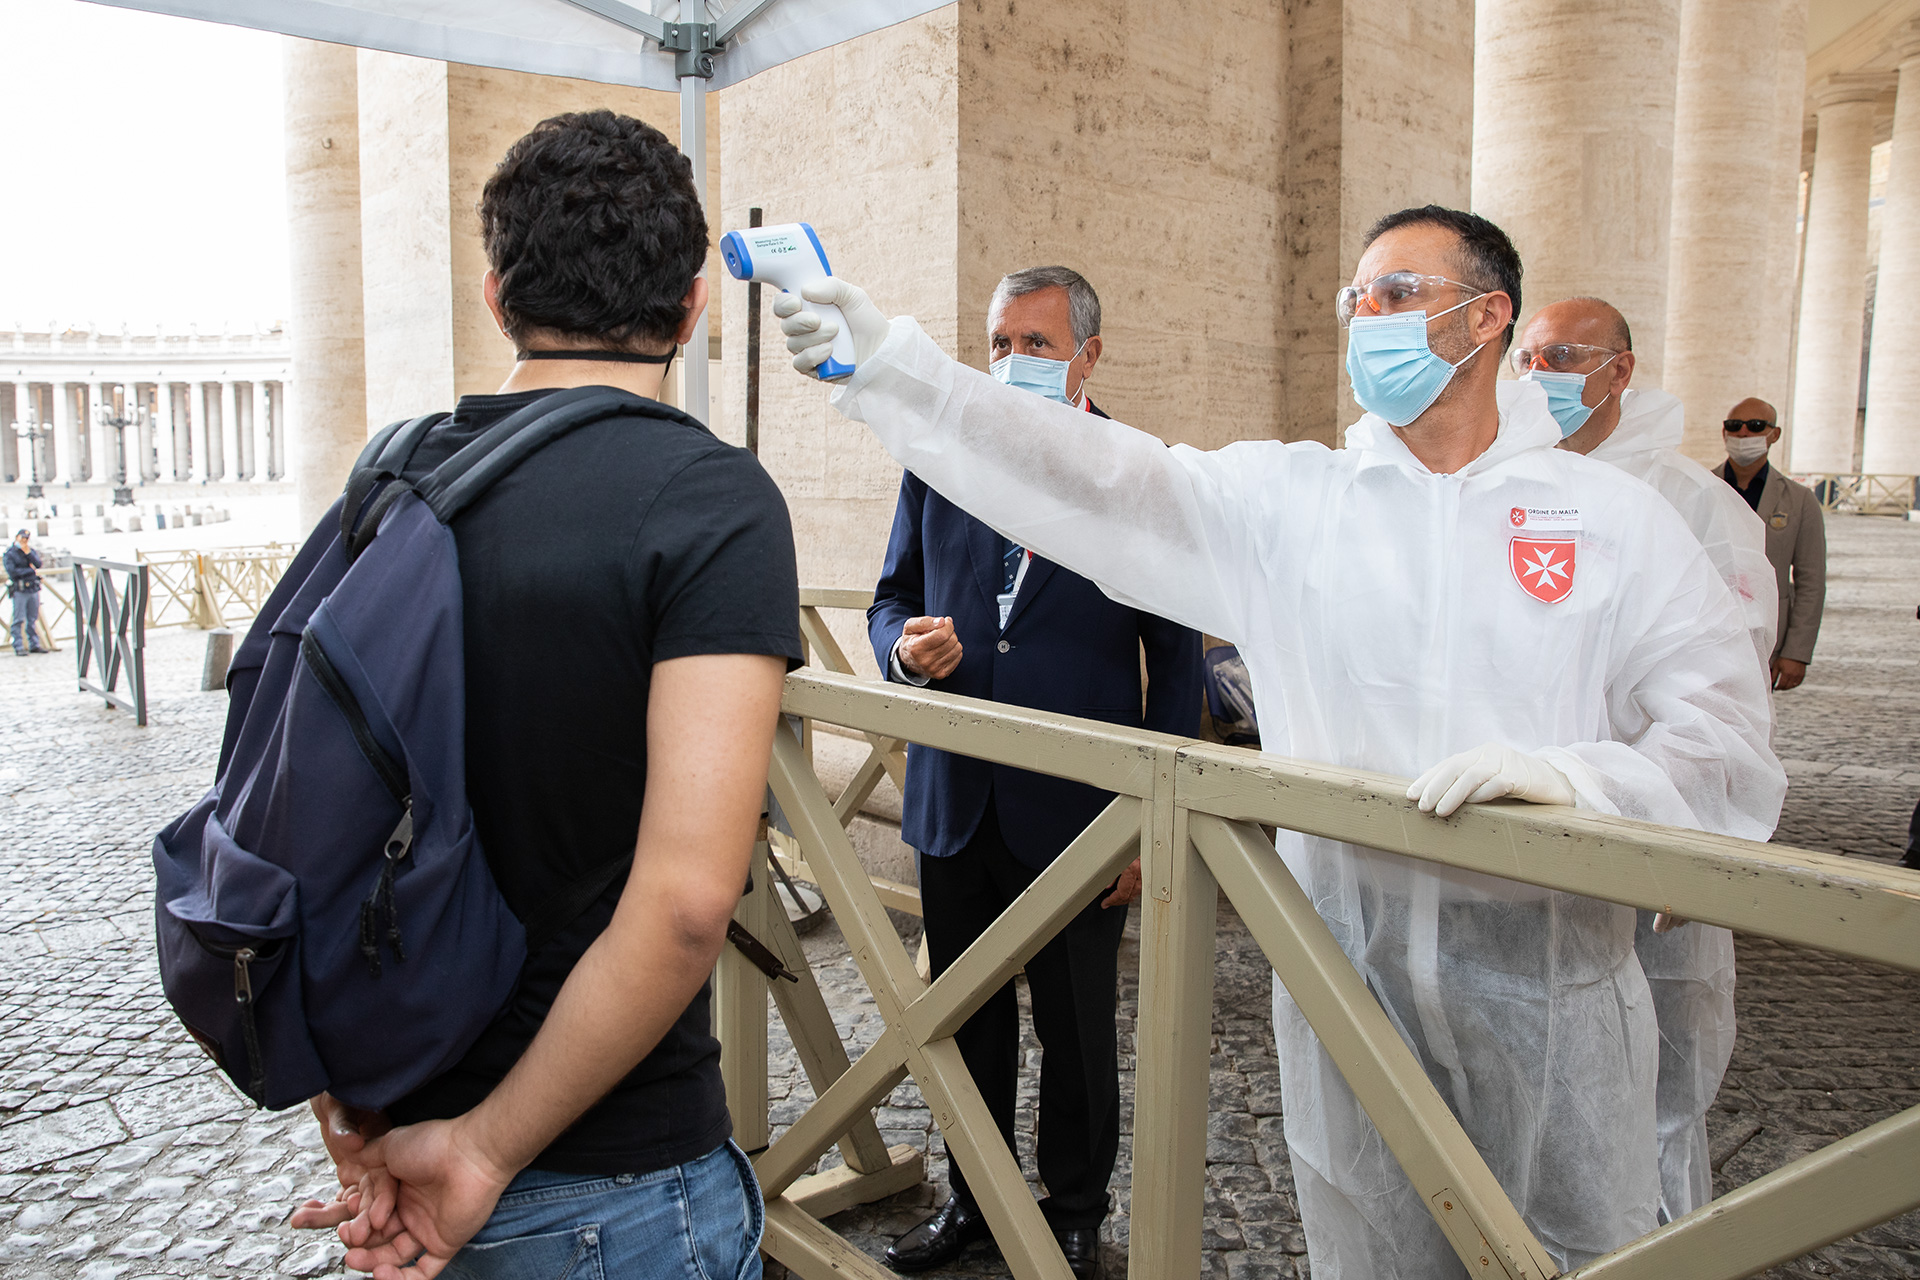 Vuelve a abrir sus puertas la Basílica de San Pedro: los voluntarios de la Orden de Malta colaboran con los controles sanitarios